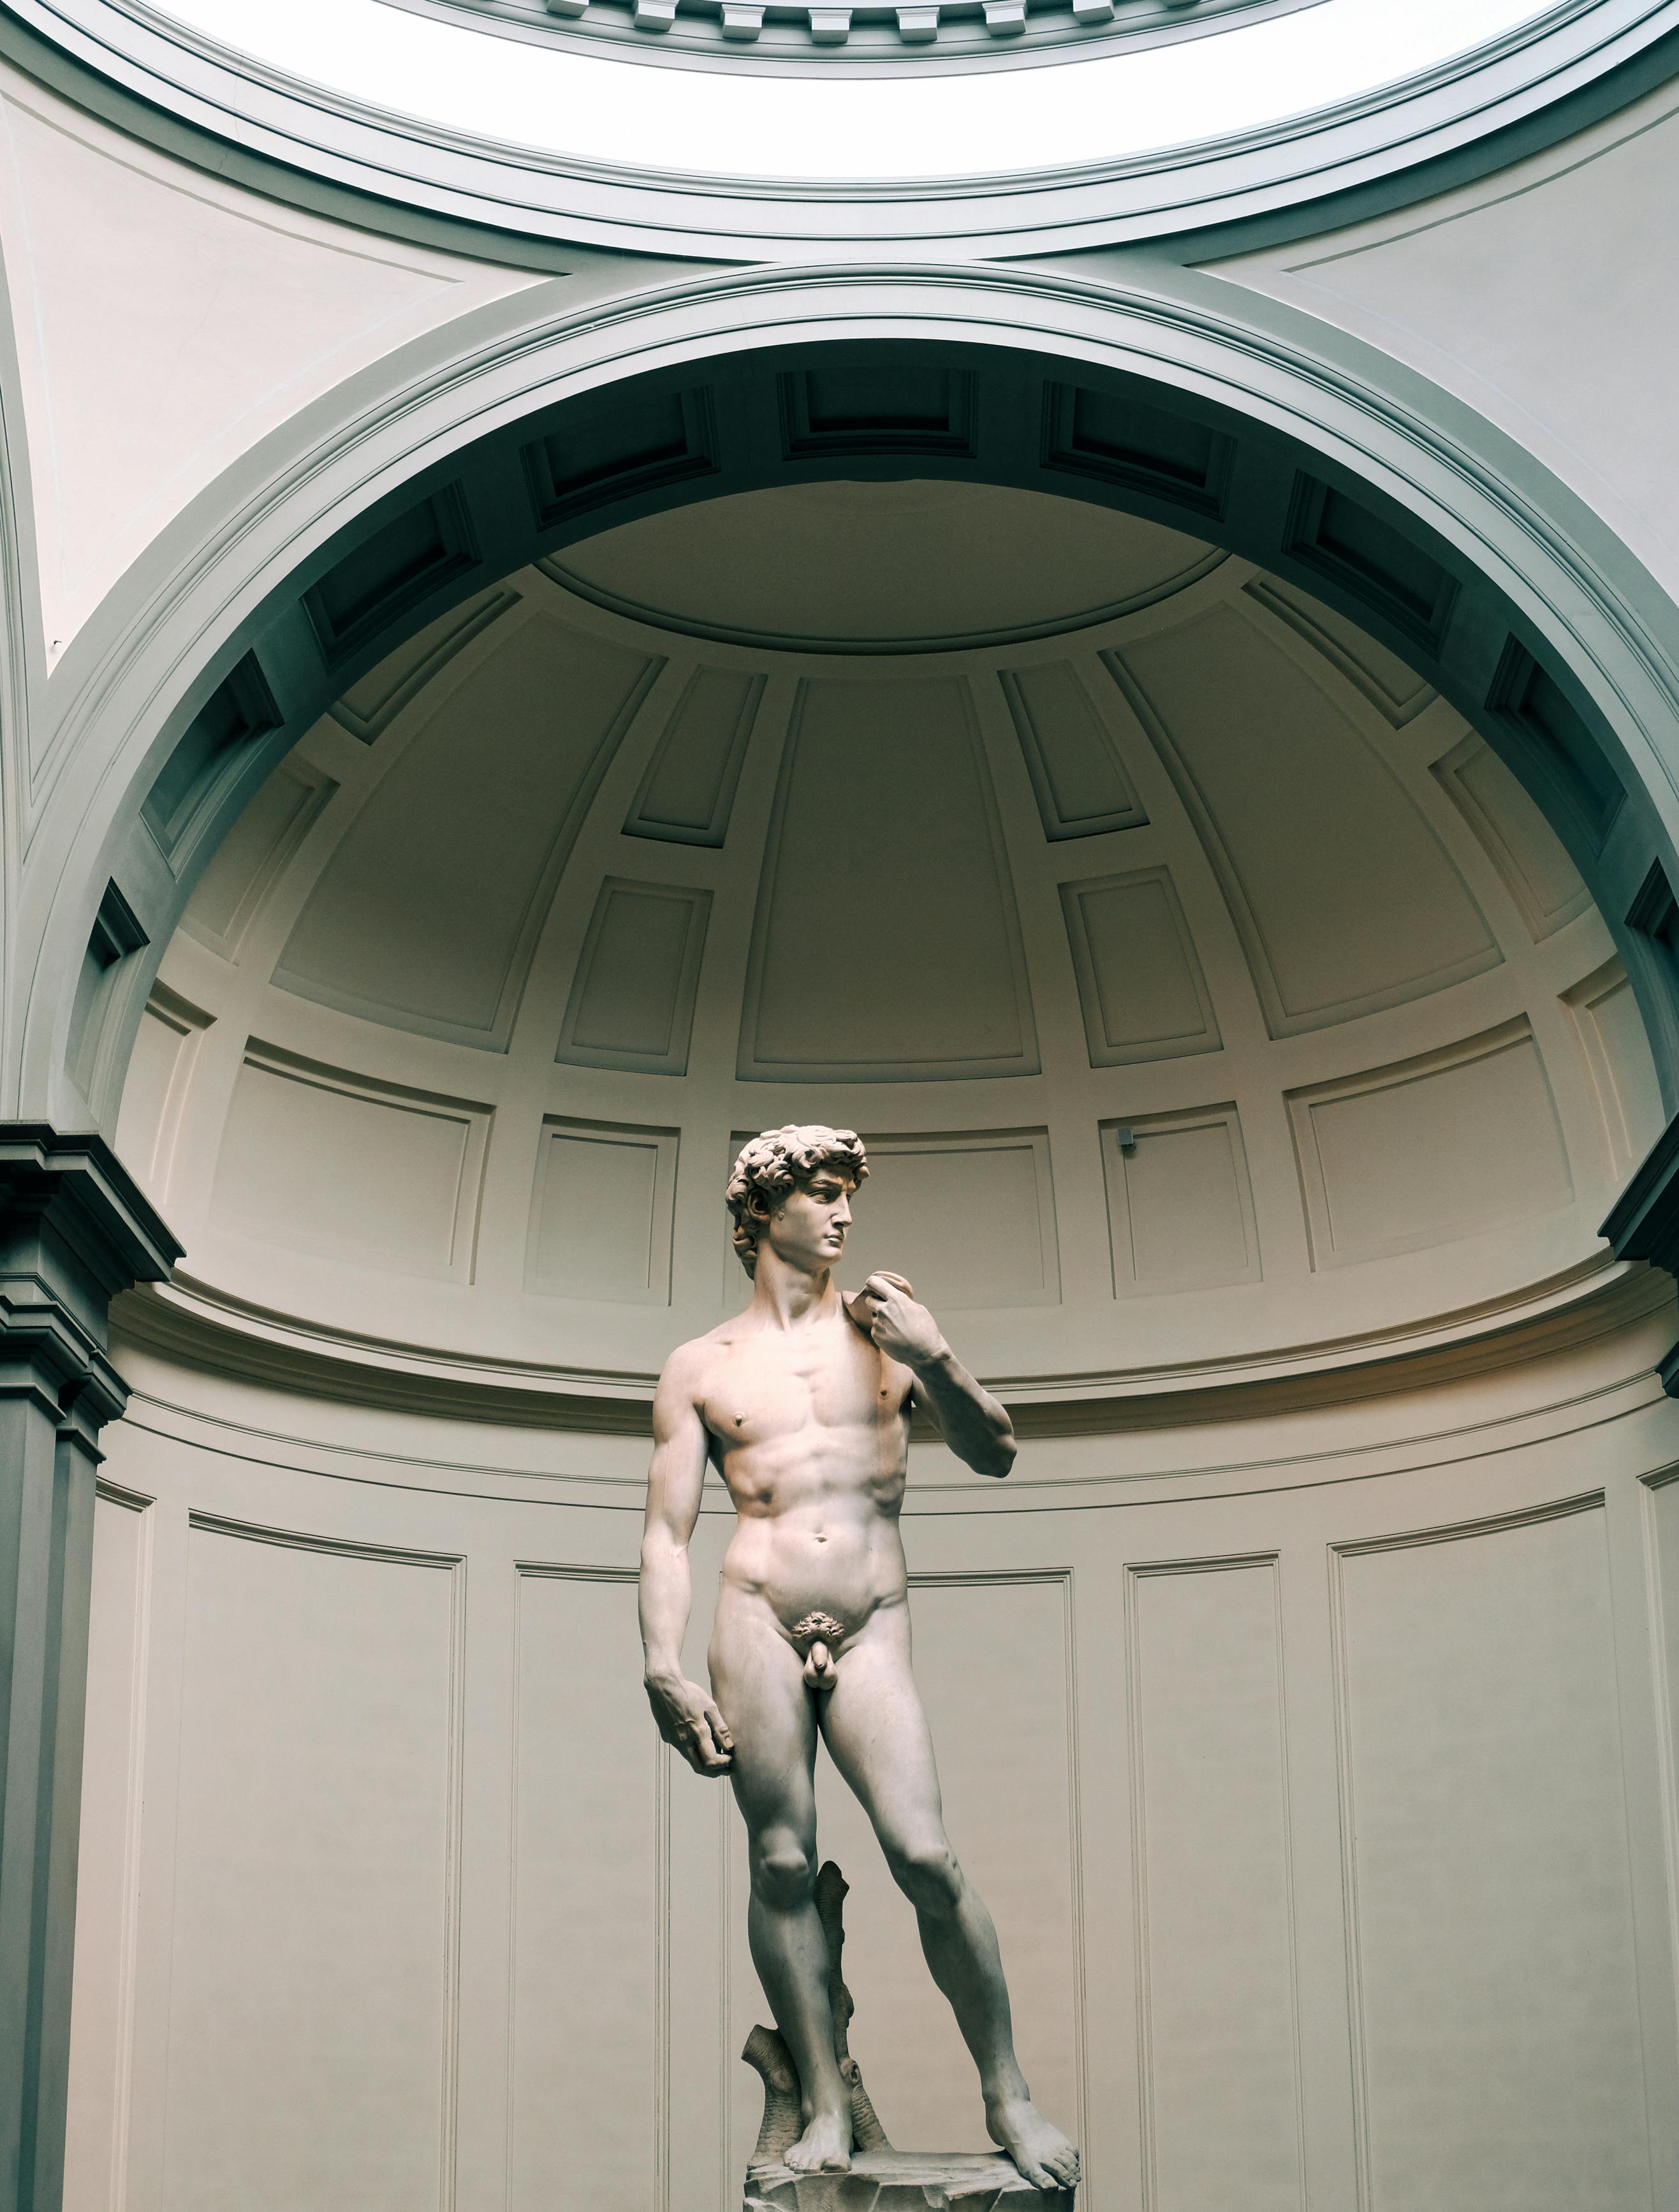 nude man statue inside building